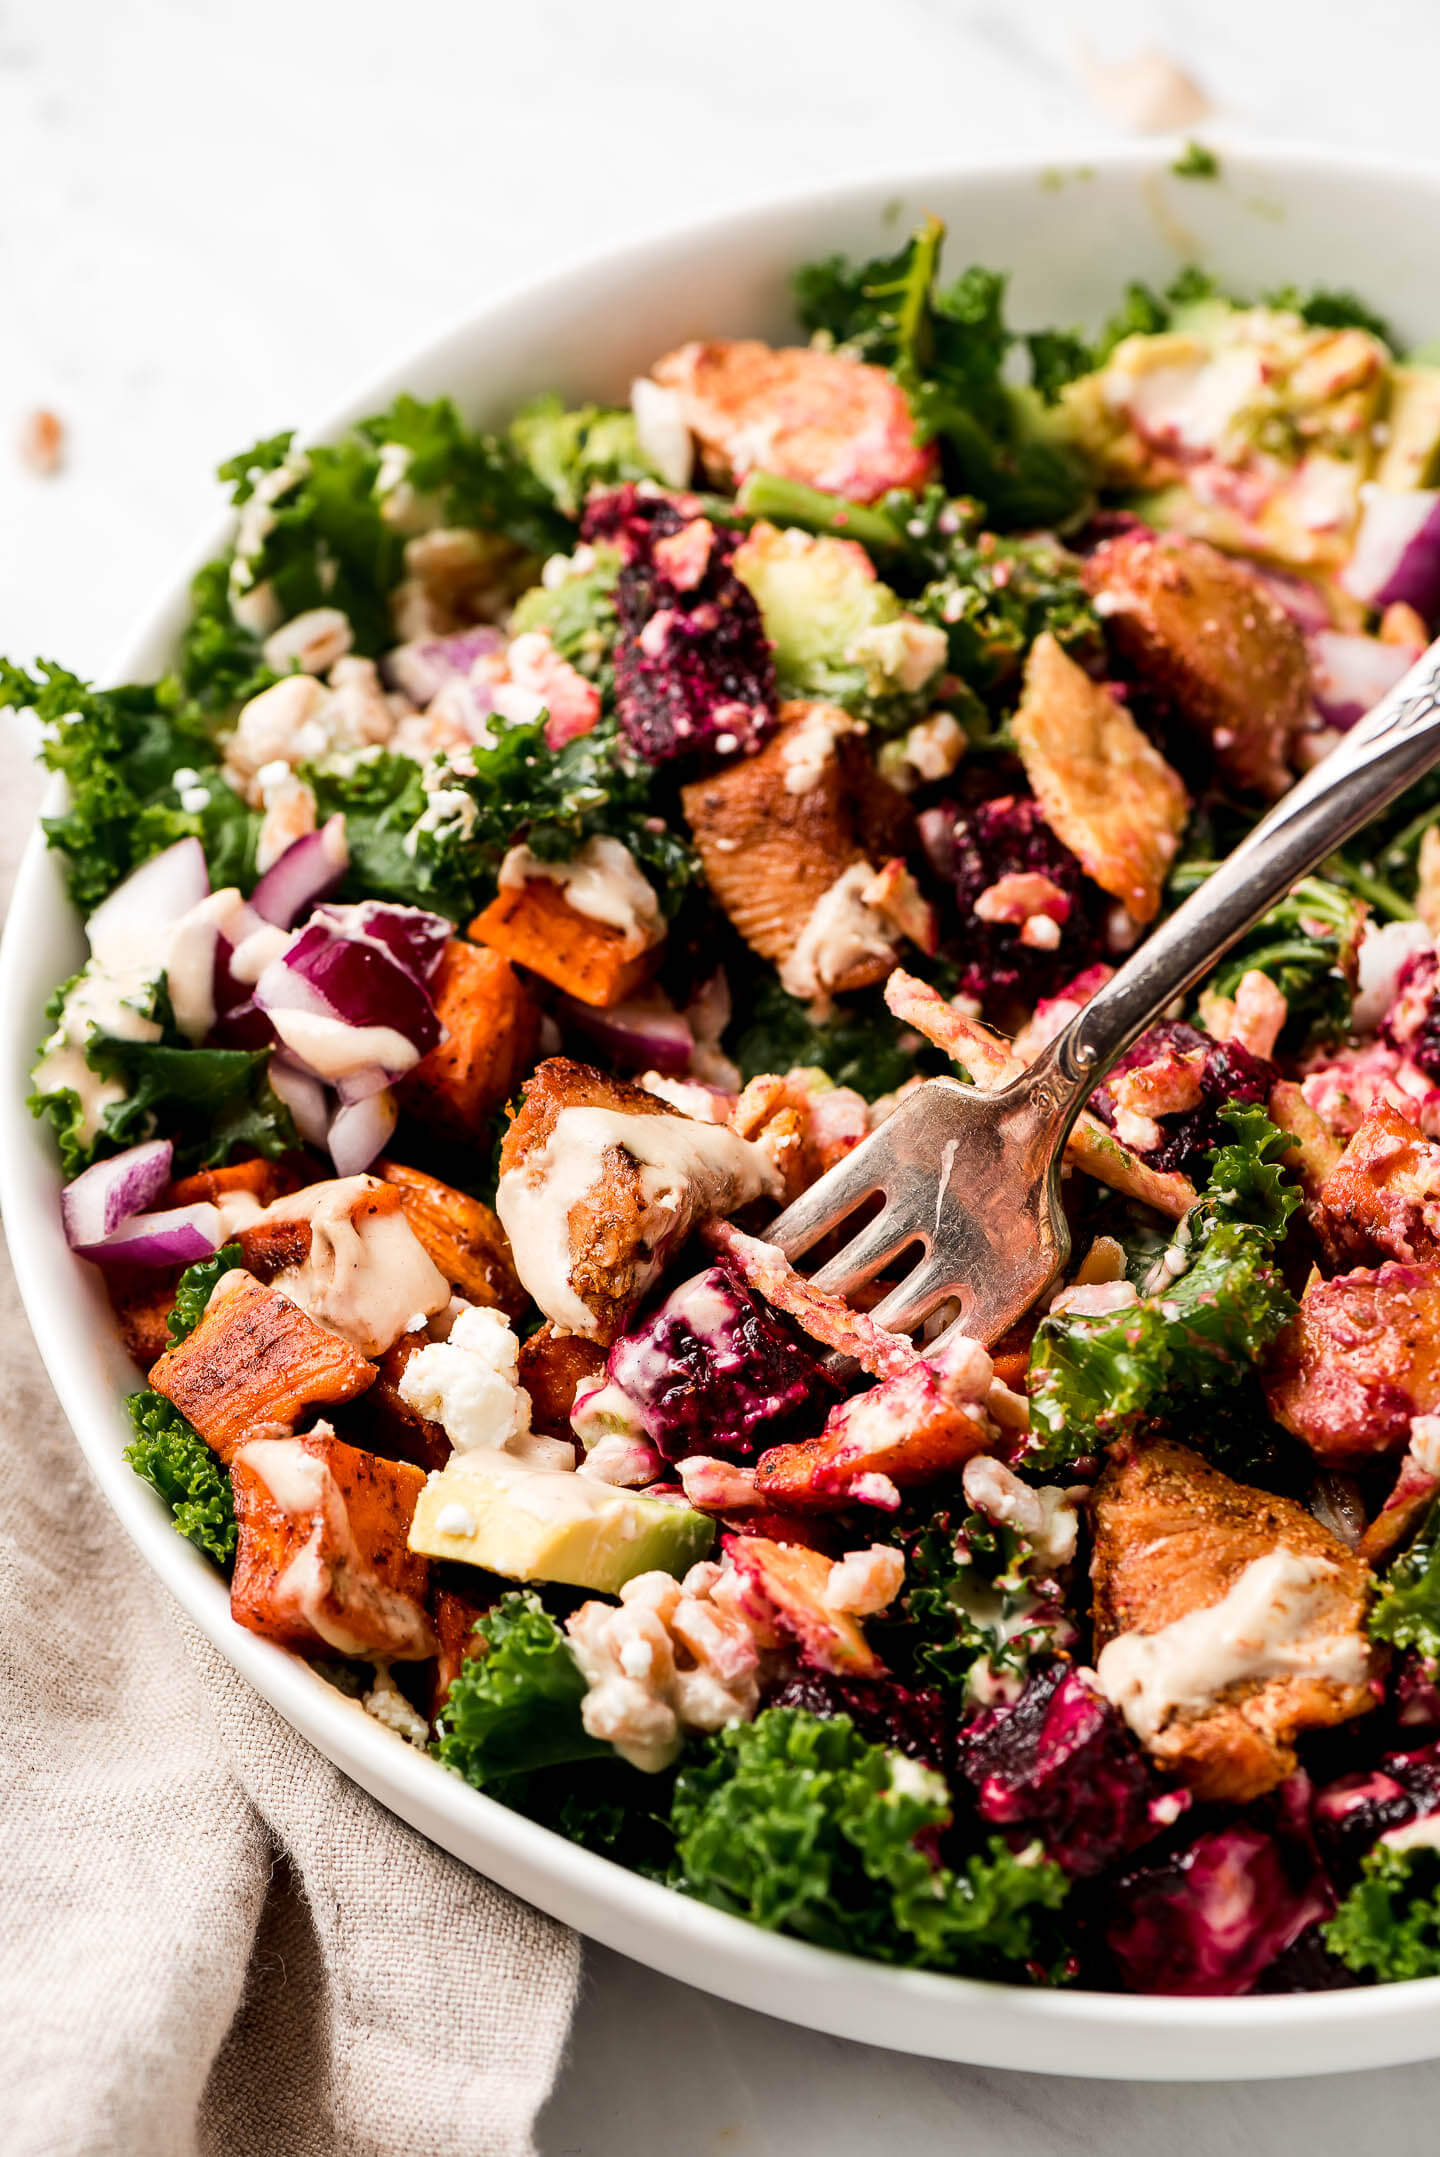 Kale Salad with Roasted Vegetables - Garnish & Glaze